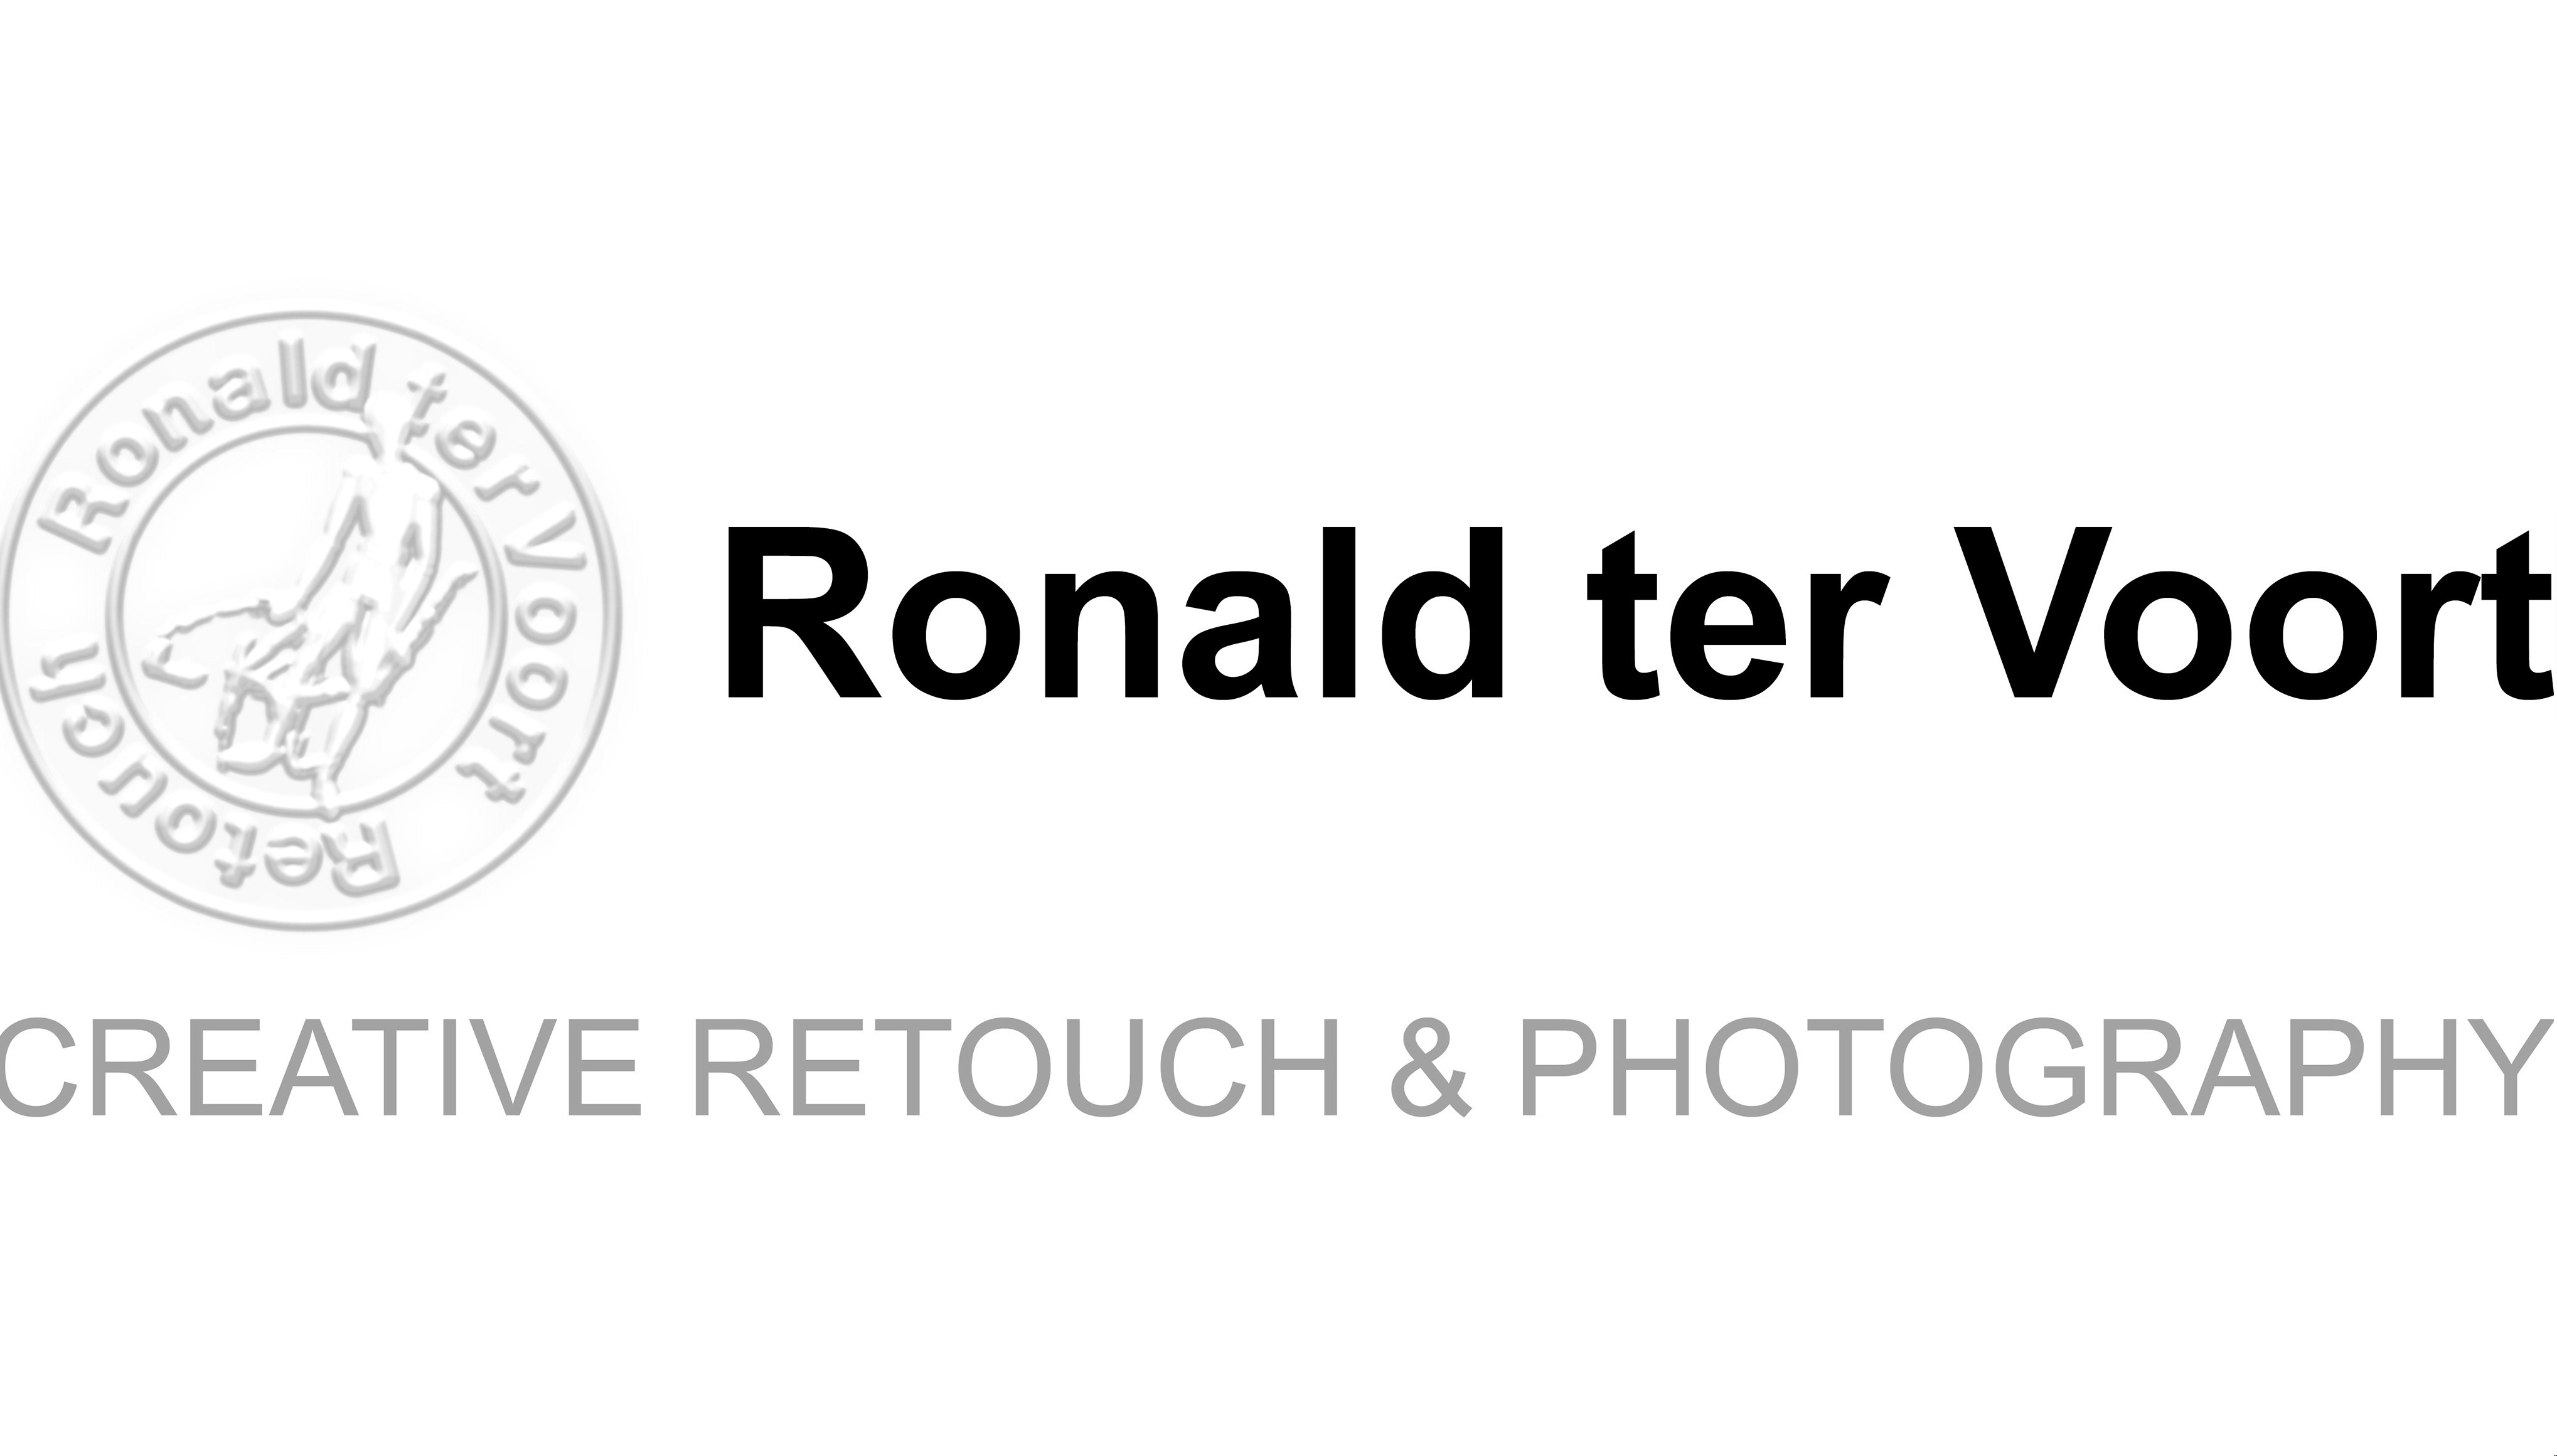 Ronald ter Voort